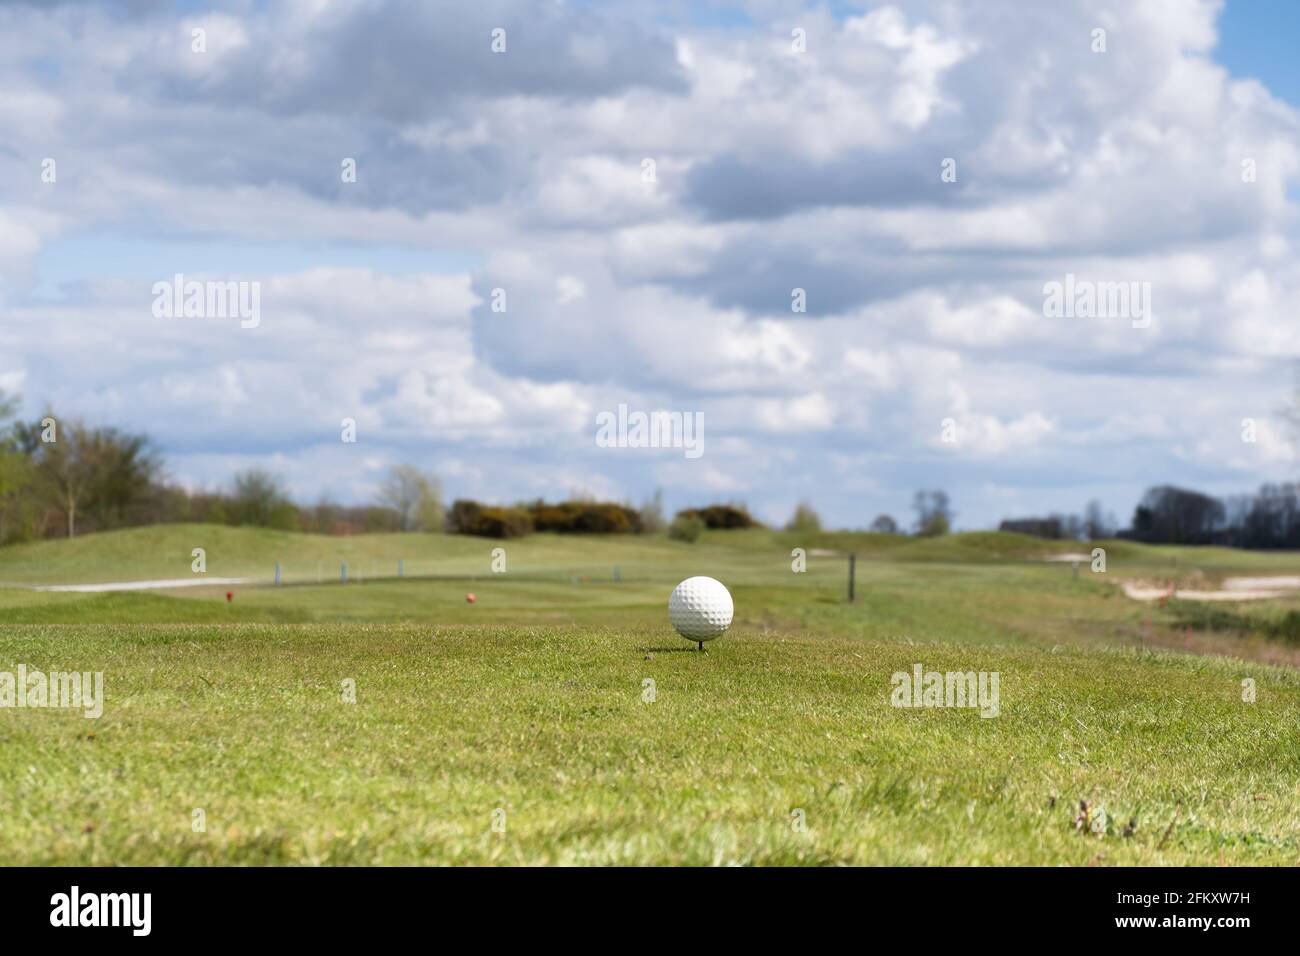 Weißer Golfball auf einem Abschlag auf einem Golfplatz mit schönem bewölktem Himmel darüber. Konzentrieren Sie sich auf den Golfball, geringe Schärfentiefe Stockfoto